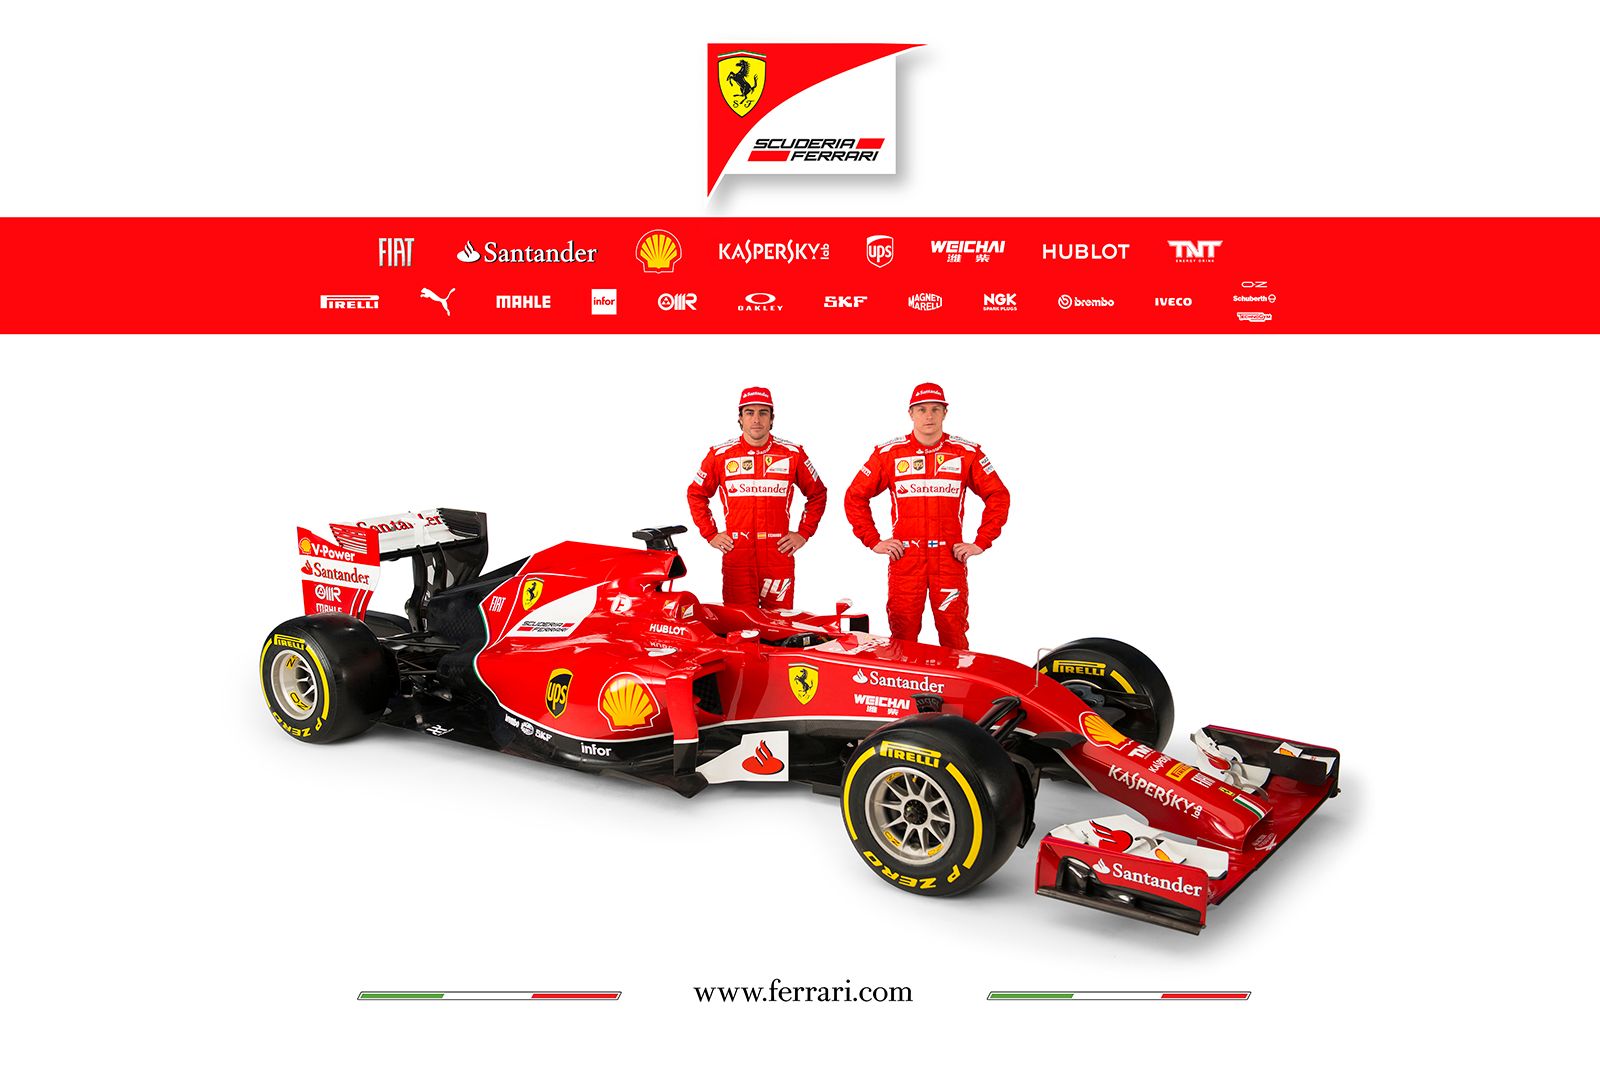 2014 Ferrari F14 T 